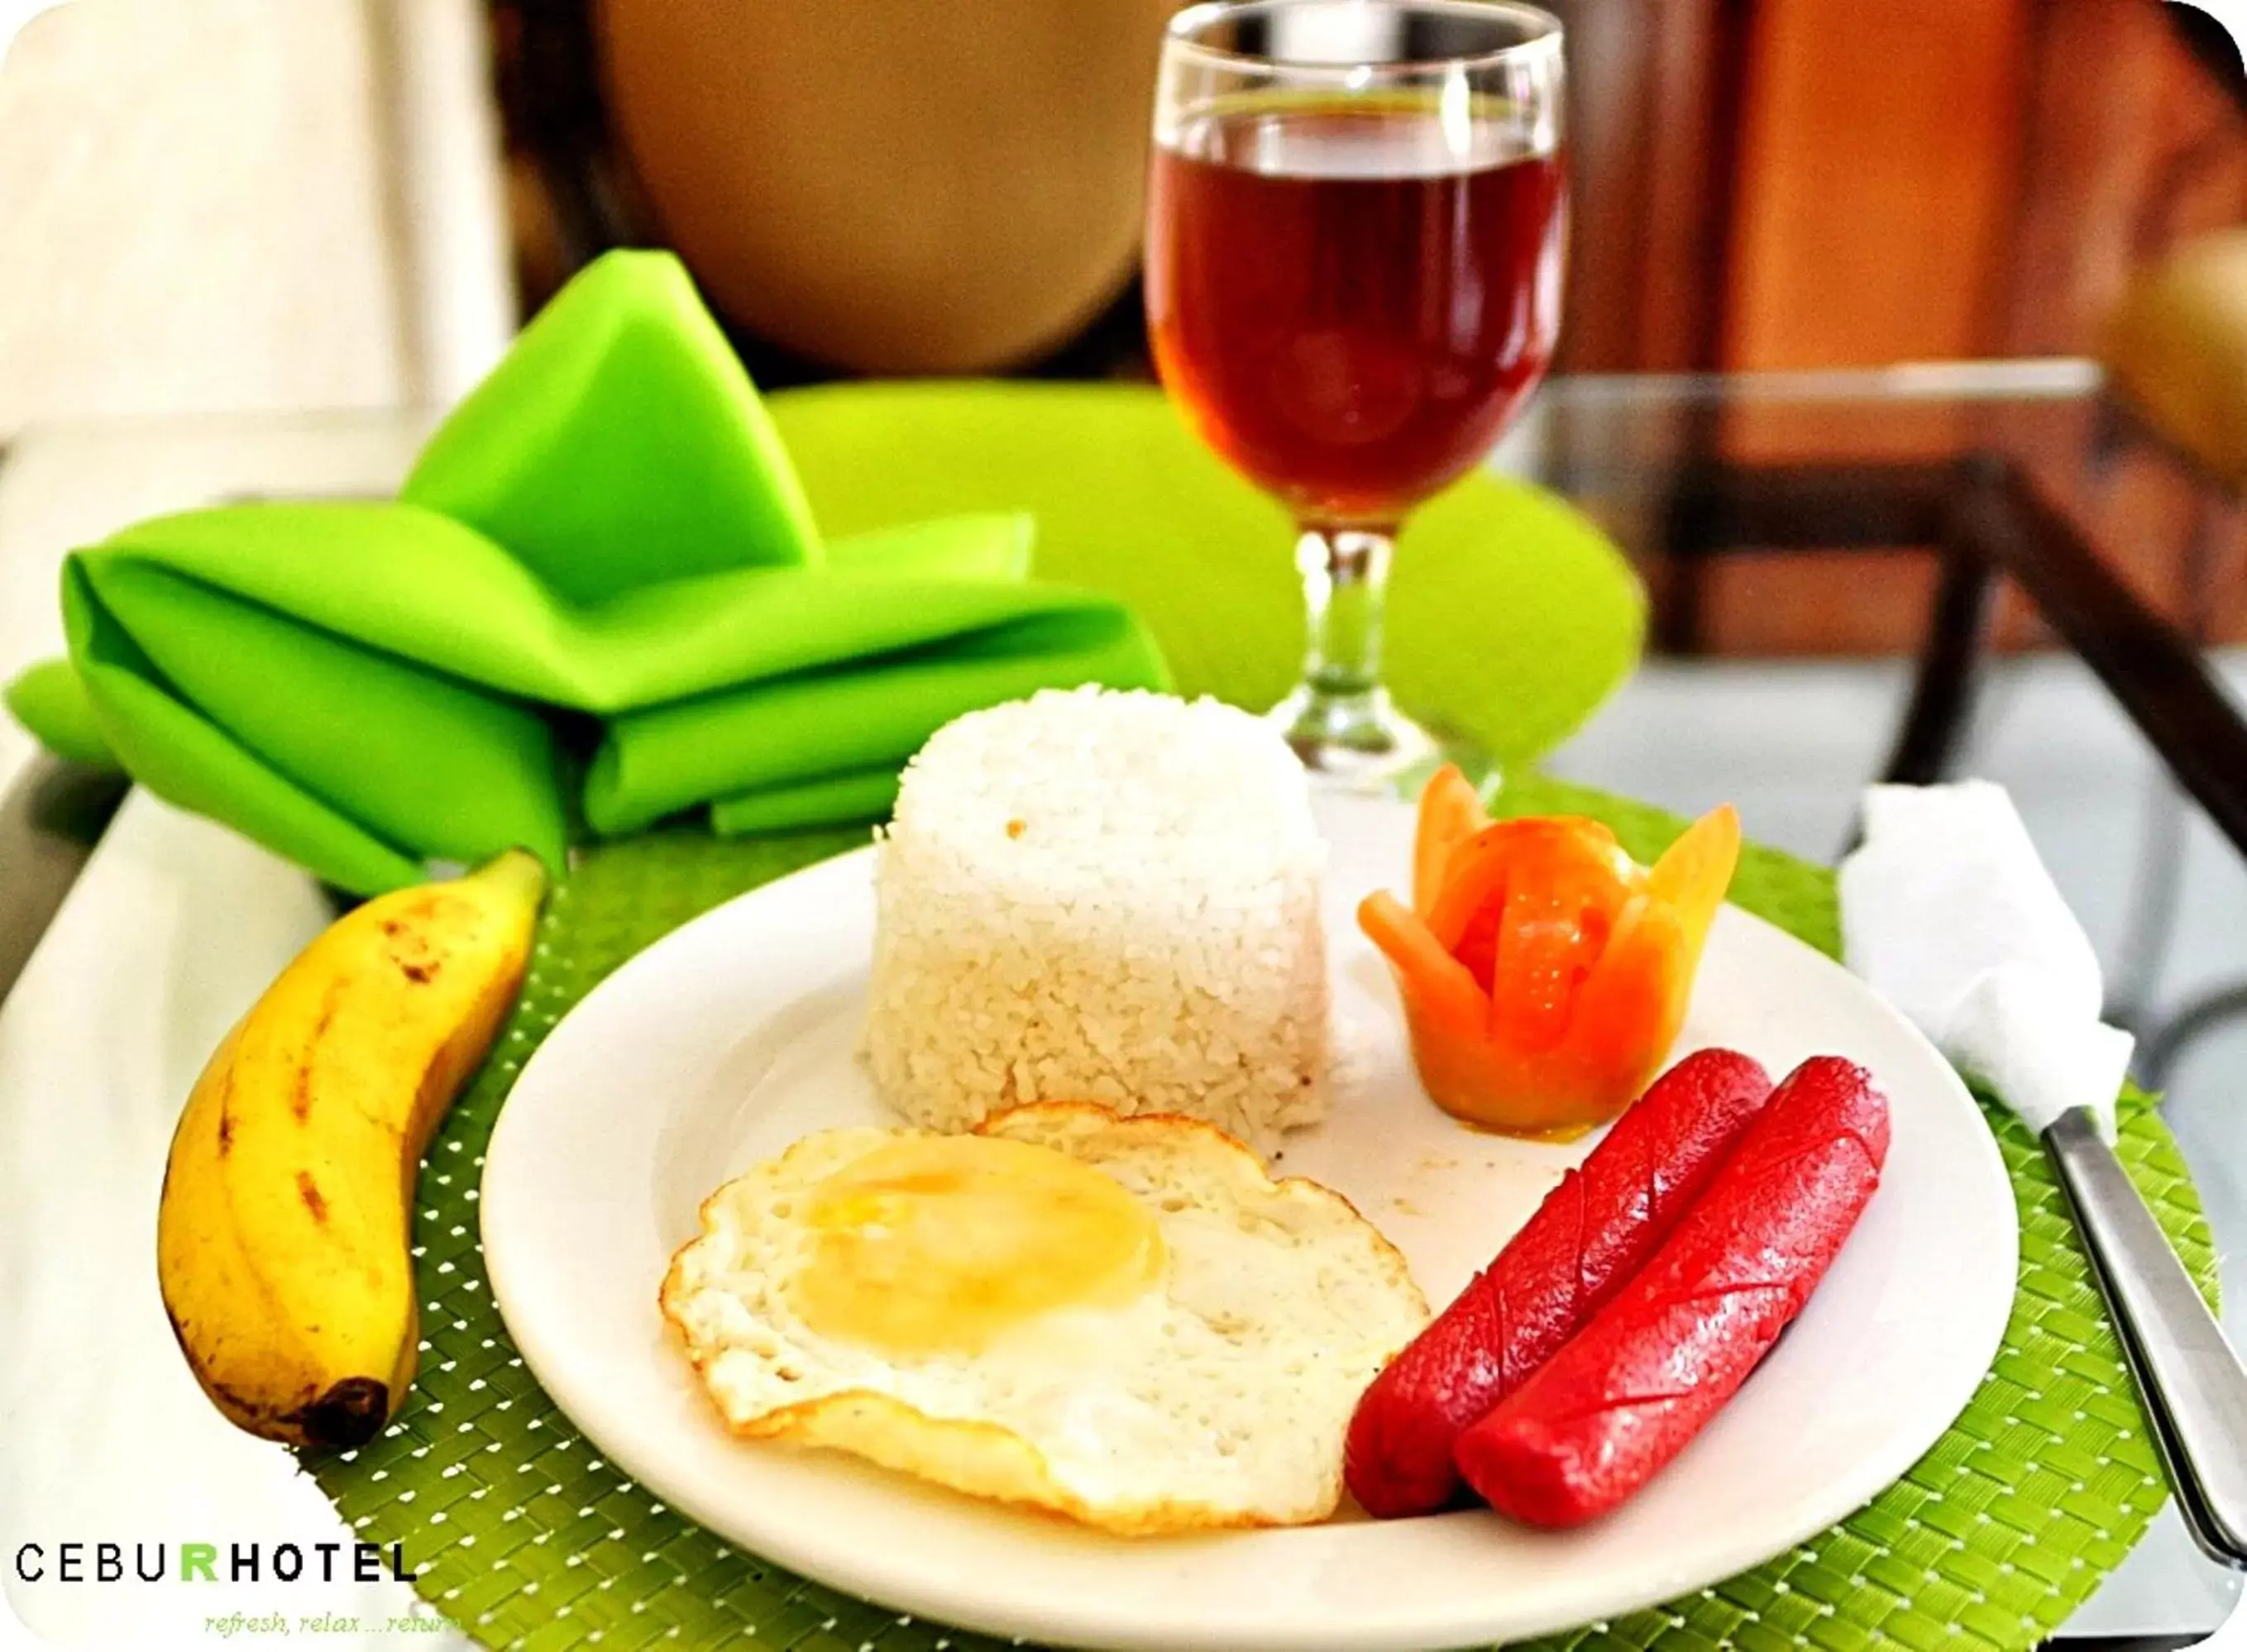 Food in Cebu R Hotel Capitol